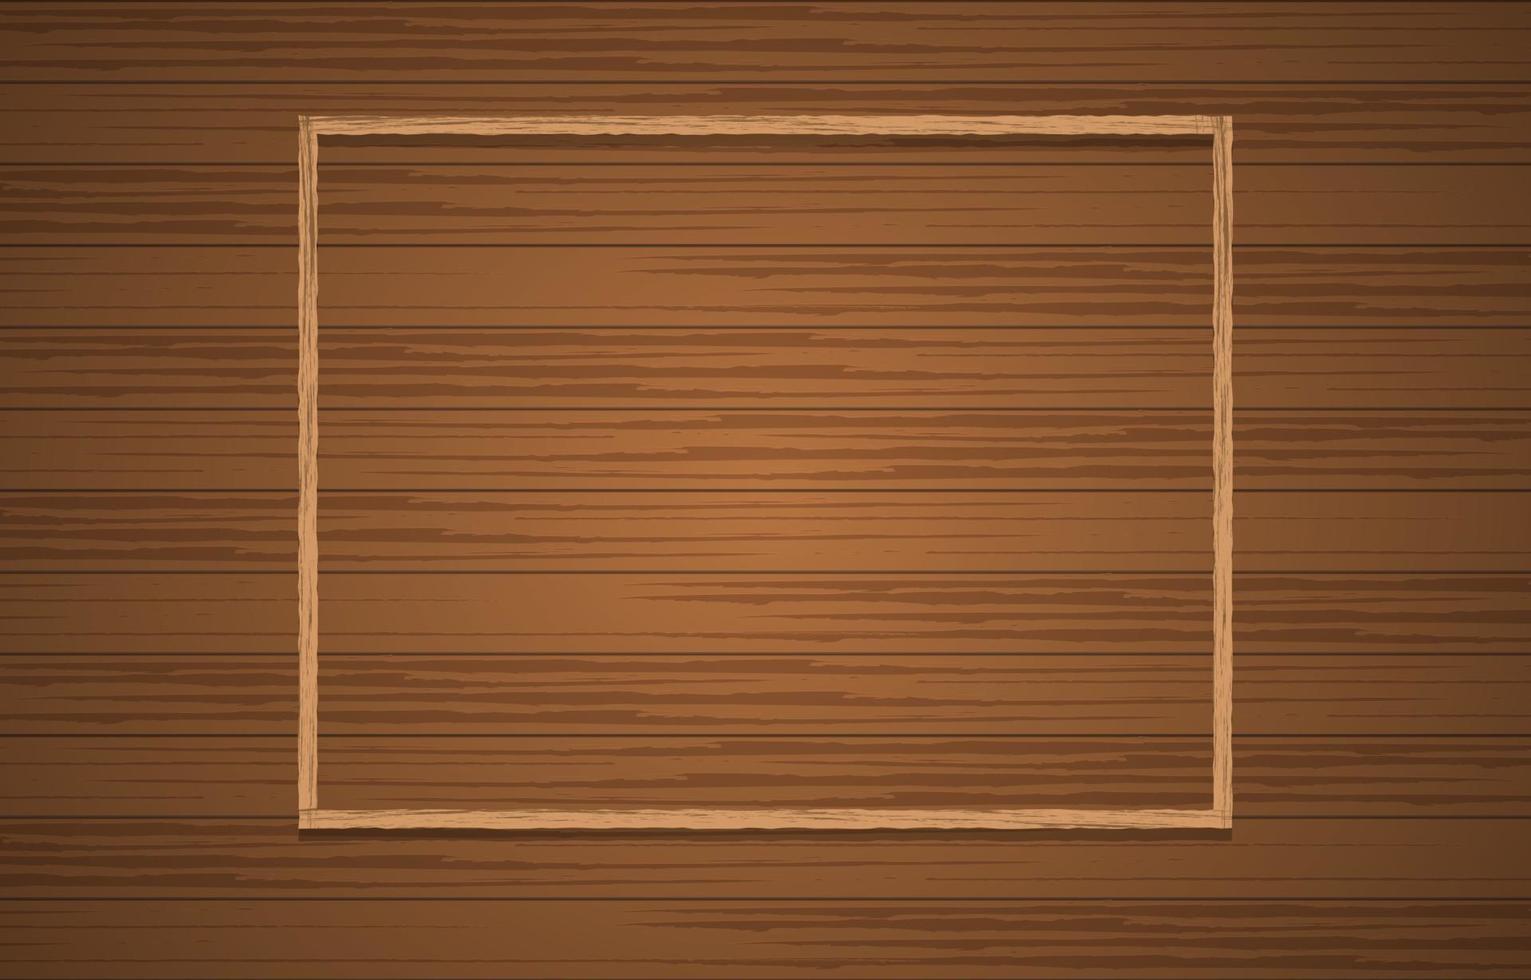 Minimalist Brown Wooden Background vector